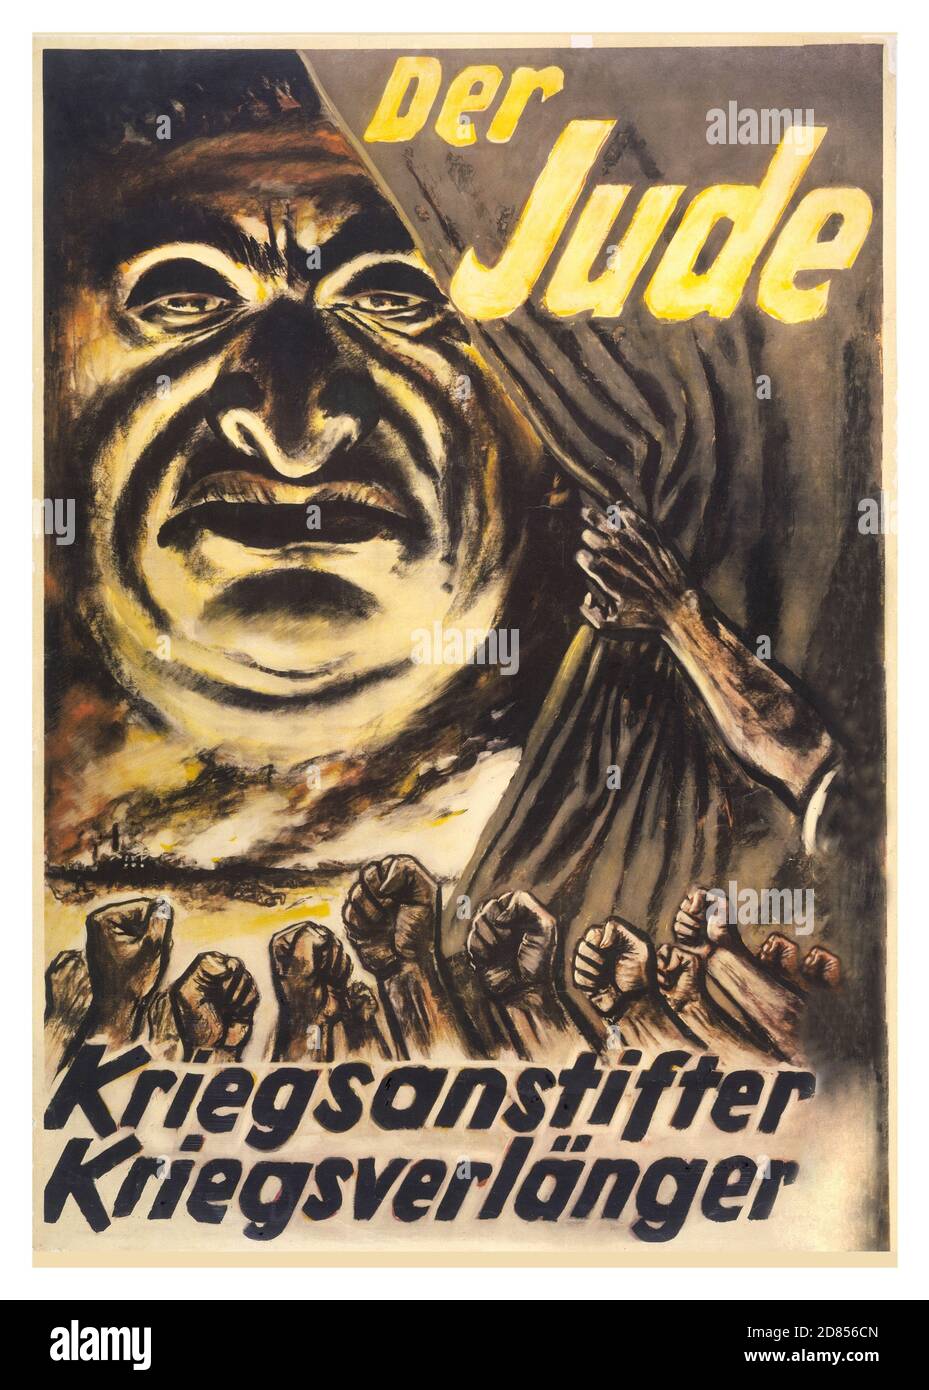 Vintage World war II Propaganda Poster 'der Jude' 'Kriegstreiber' 'war Prolonger'. 1940er Jahre Deutsches antisemitisches antijüdisches Plakat. Eine theatralische Enthüllung eines fiesen Stereotyps Karikatur eines männlichen Juden mit Bildunterschriften KRIEGSTREIBER KRIEG PROLONGER seine Botschaft ist es, Juden zu beschuldigen, den 2. Weltkrieg zu beginnen und ihn zu verewigen. Kunstwerk von Hans Schweitzer, angefertigt unter seinem beliebten Pseudonym 'Majolnir' Stockfoto